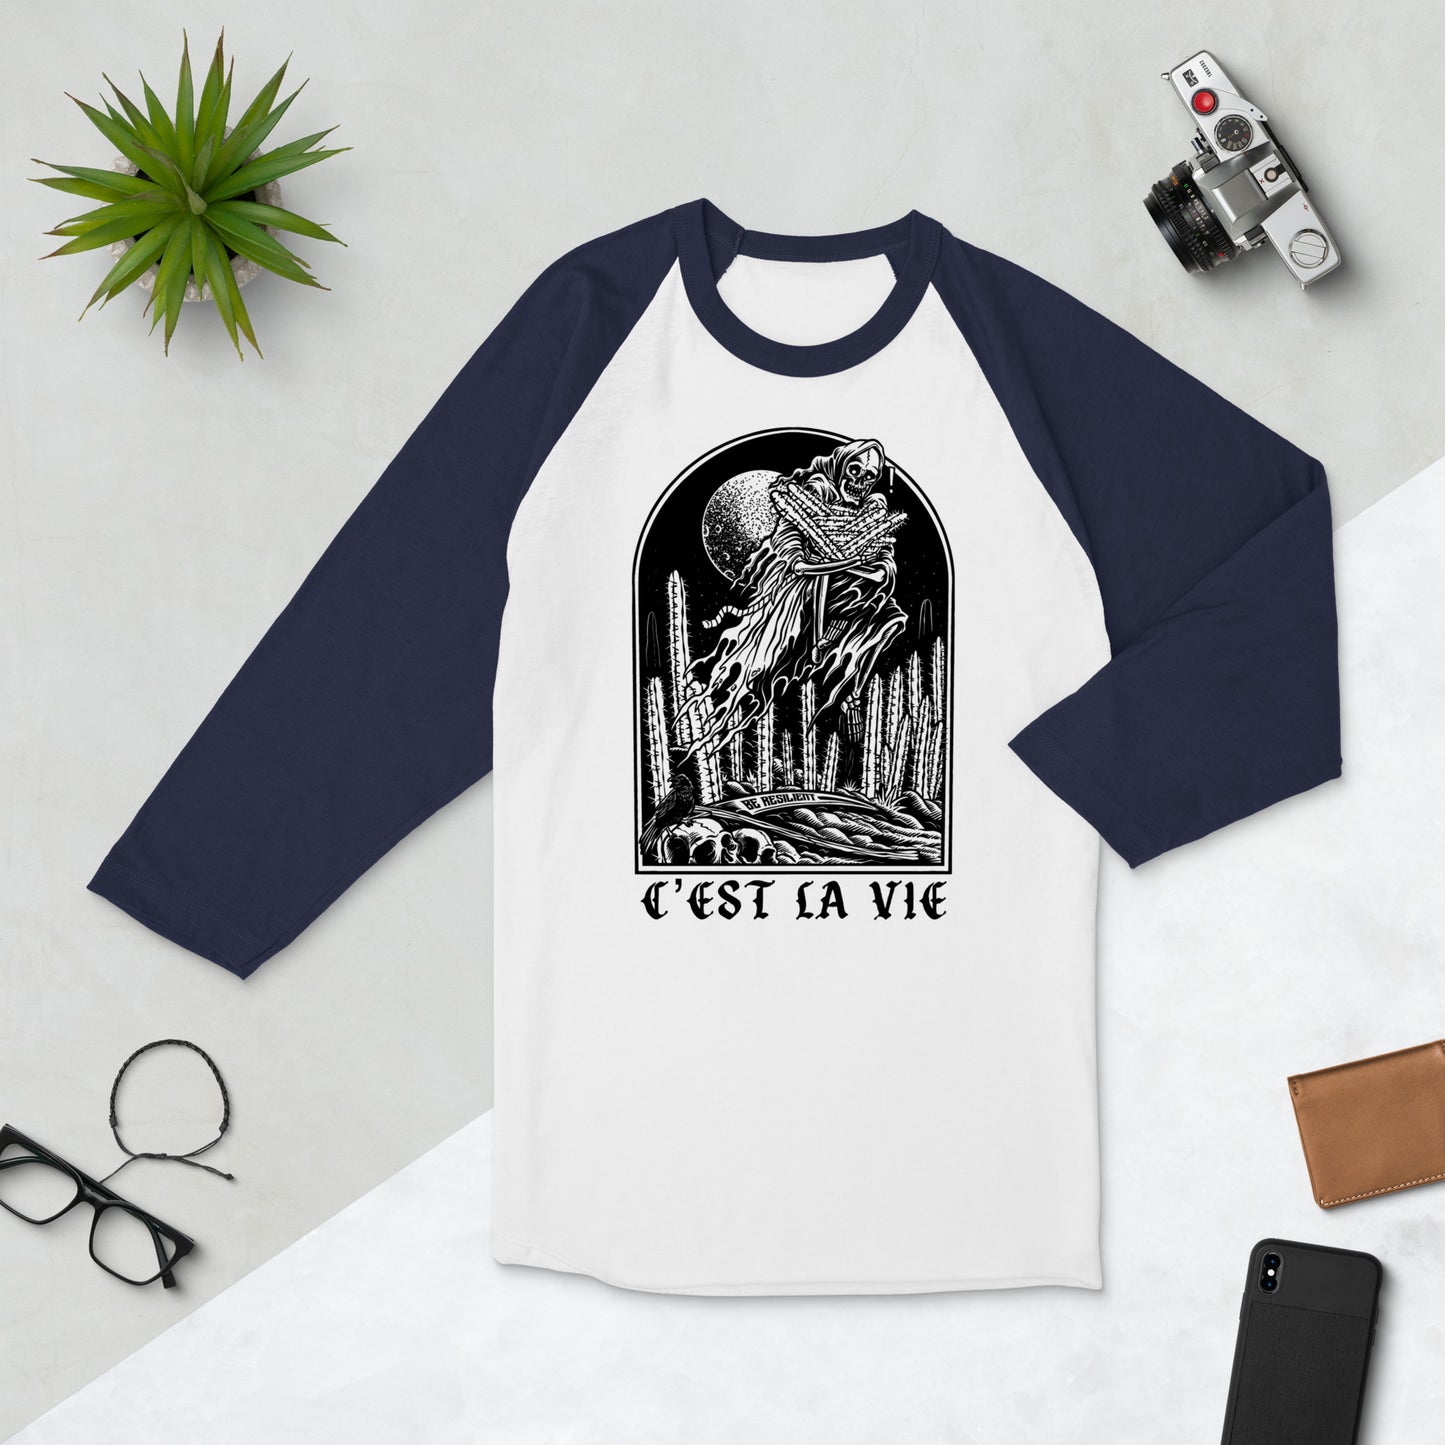 C'est La Vie 3/4 sleeve shirt